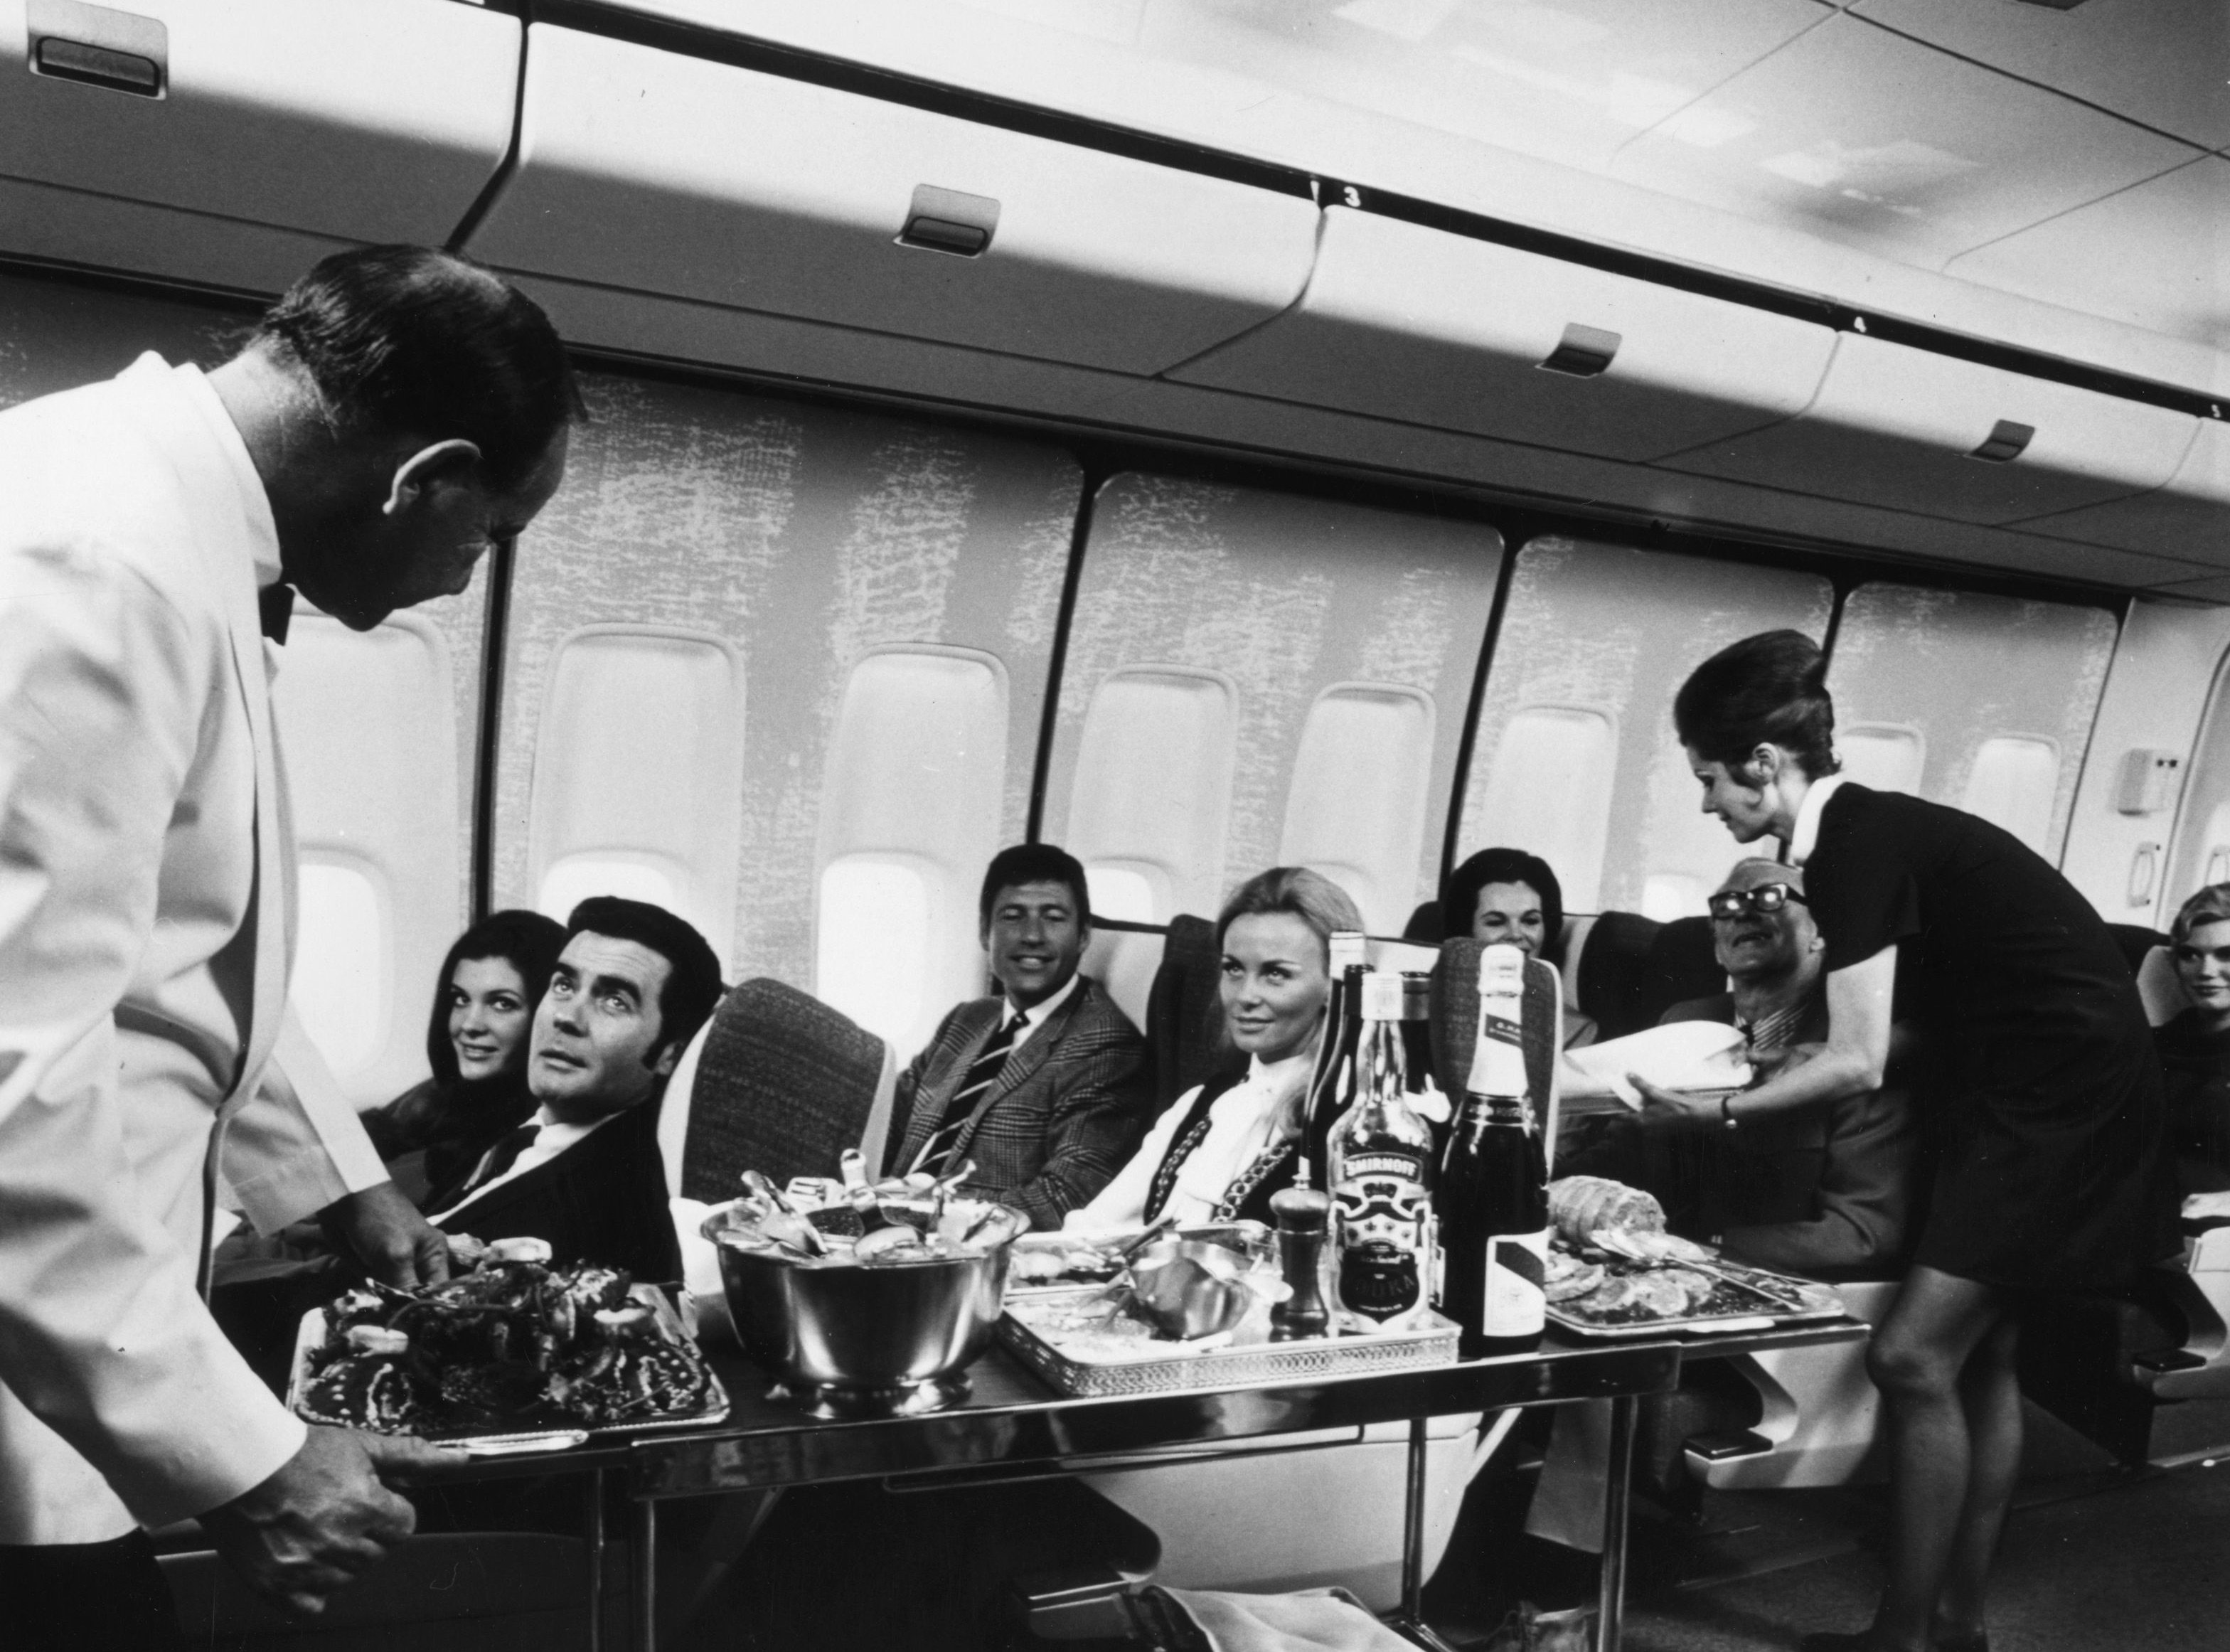 first class passengers